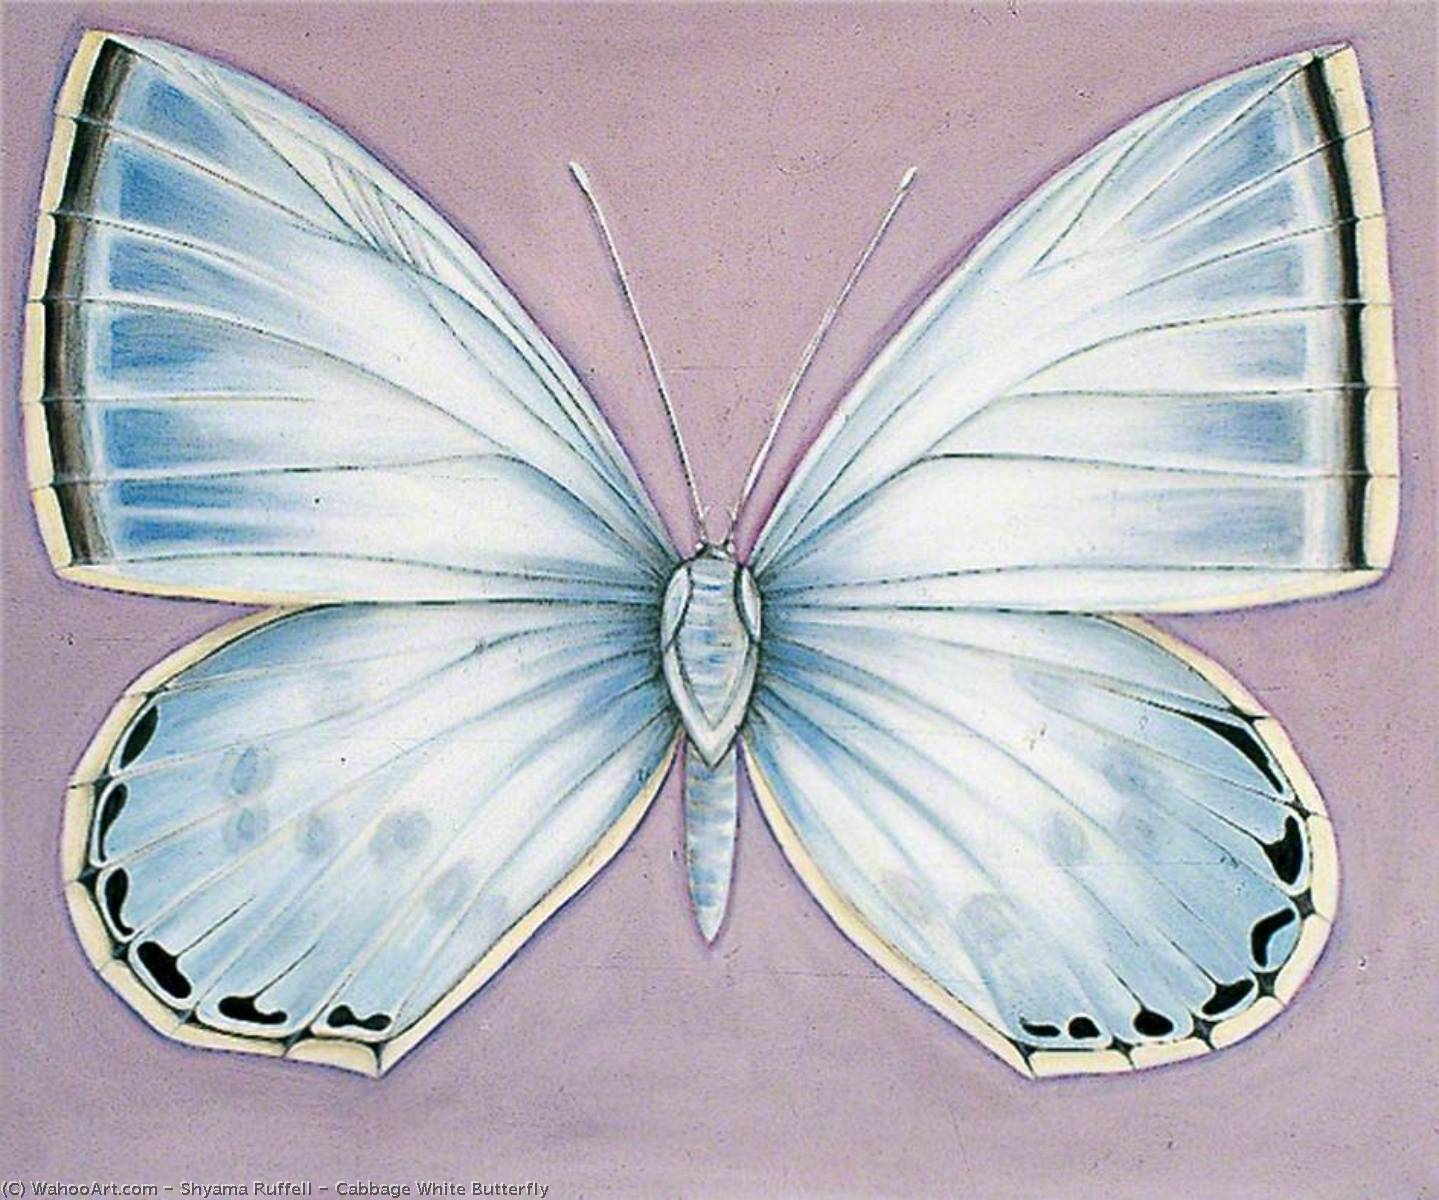 Cabbage White Butterfly, 2002 by Shyama Ruffell Shyama Ruffell | ArtsDot.com